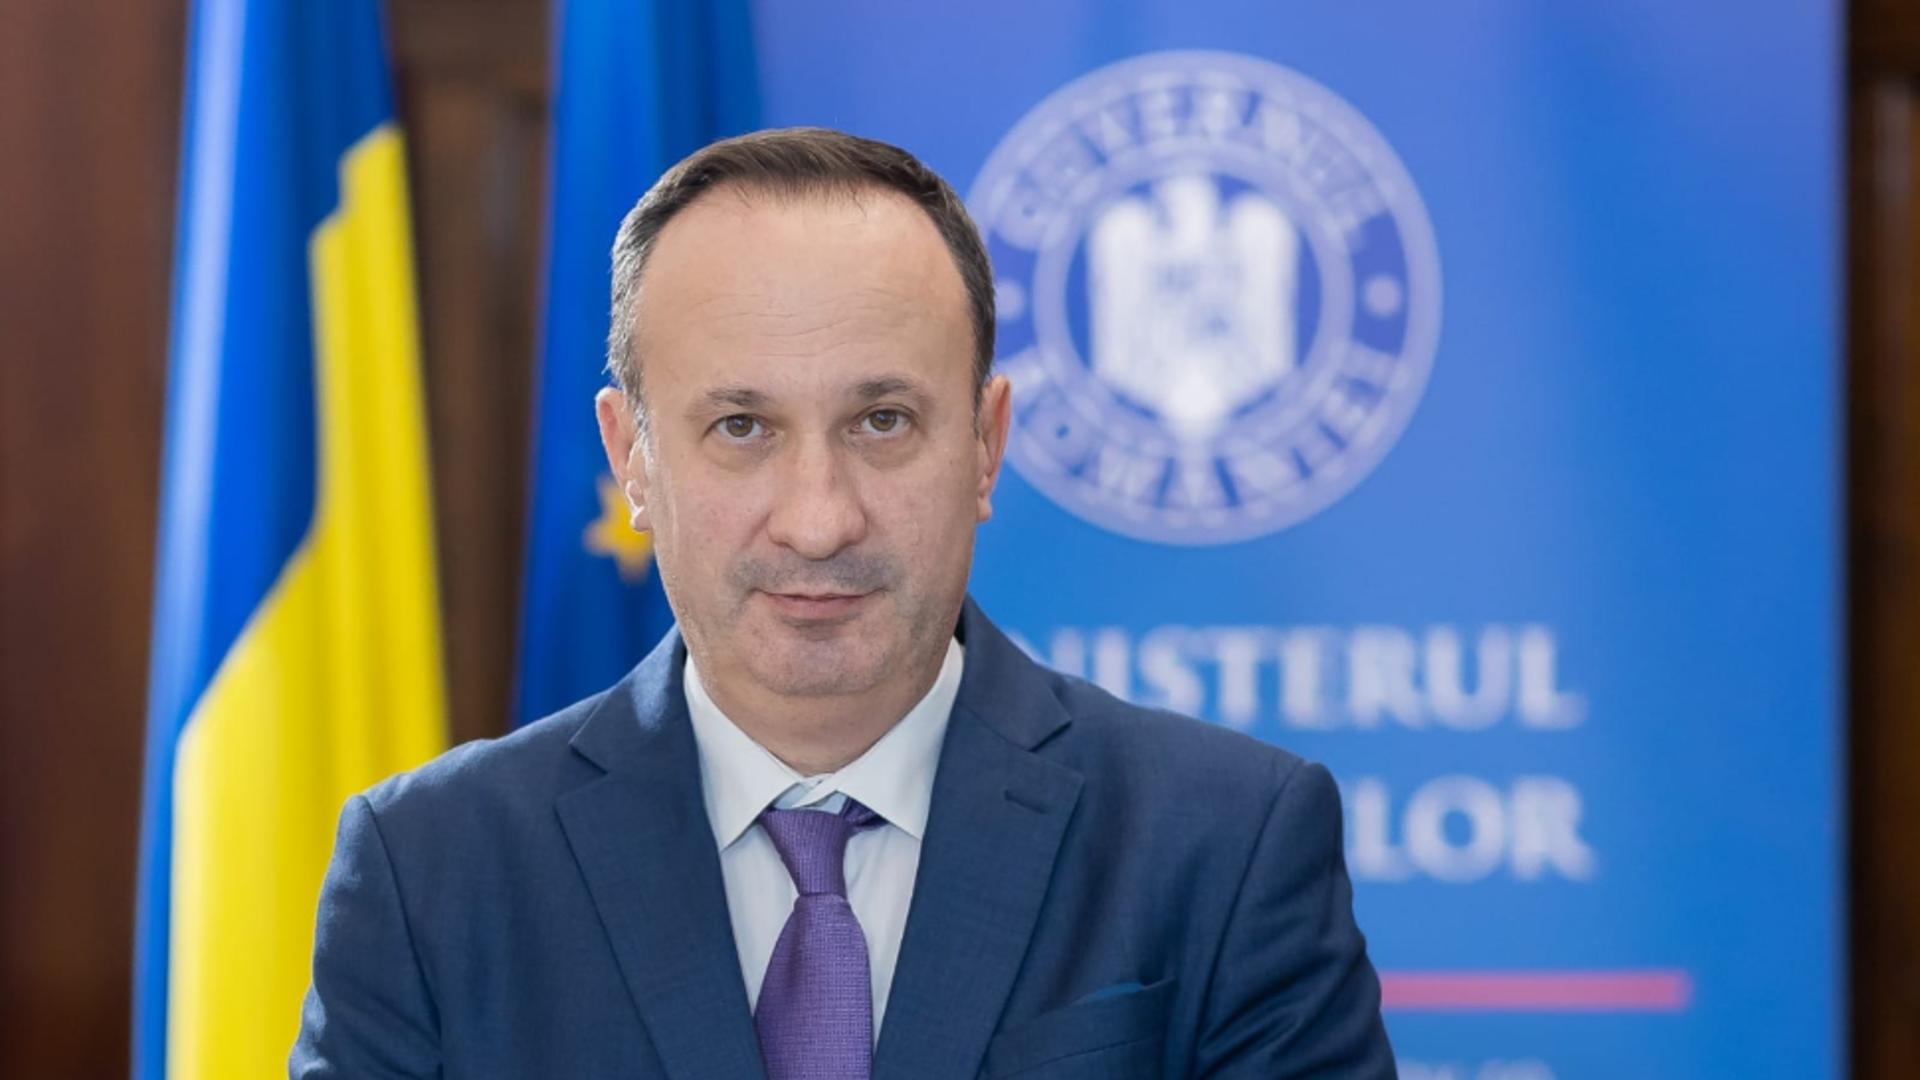 Adrian Câciu anunță rată de absorbție de 92% pentru fondurile europene: “Cea mai importantă sursă de finanțare pentru economia României”